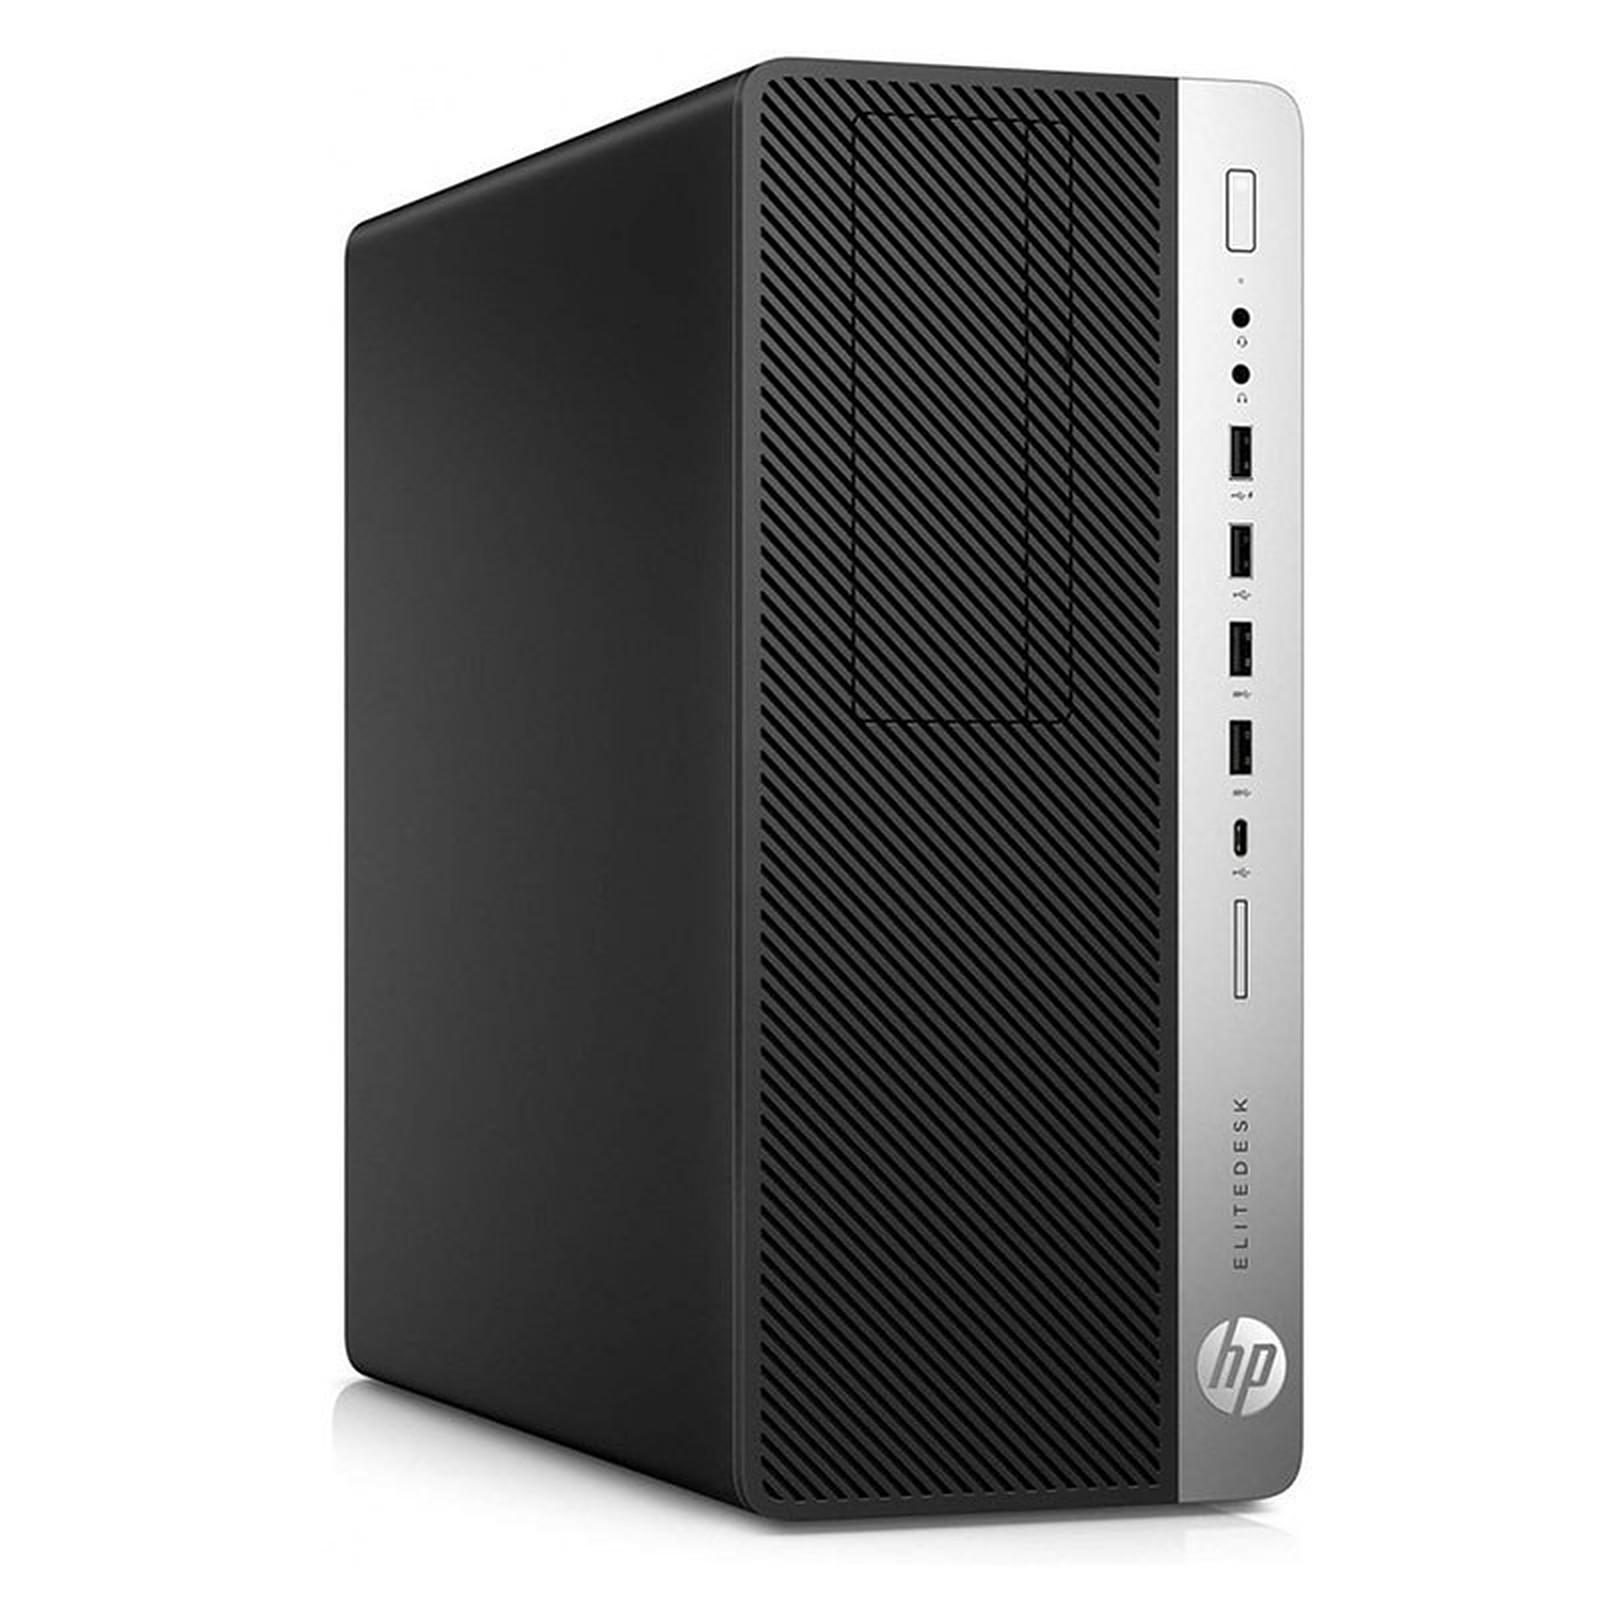 HP LPG-800G3 (I5651649S) · Reconditionne - PC de bureau reconditionne HP